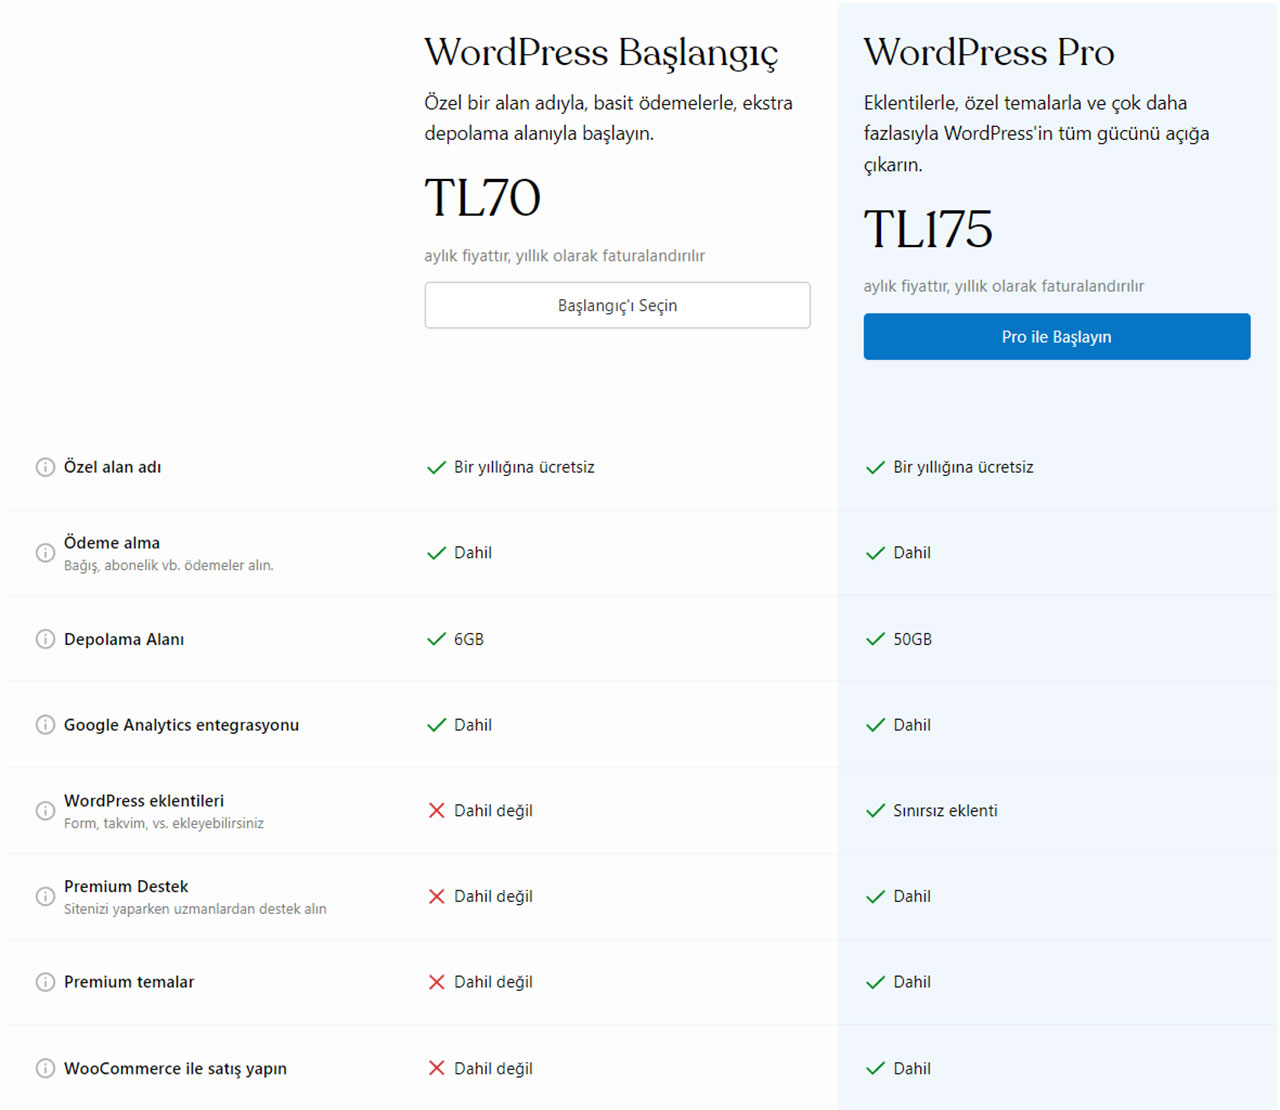 Şinasi Kaya: WordPress, .com Uzantılı Yeni Uygun Fiyatlı Paketini Duyurdu 9